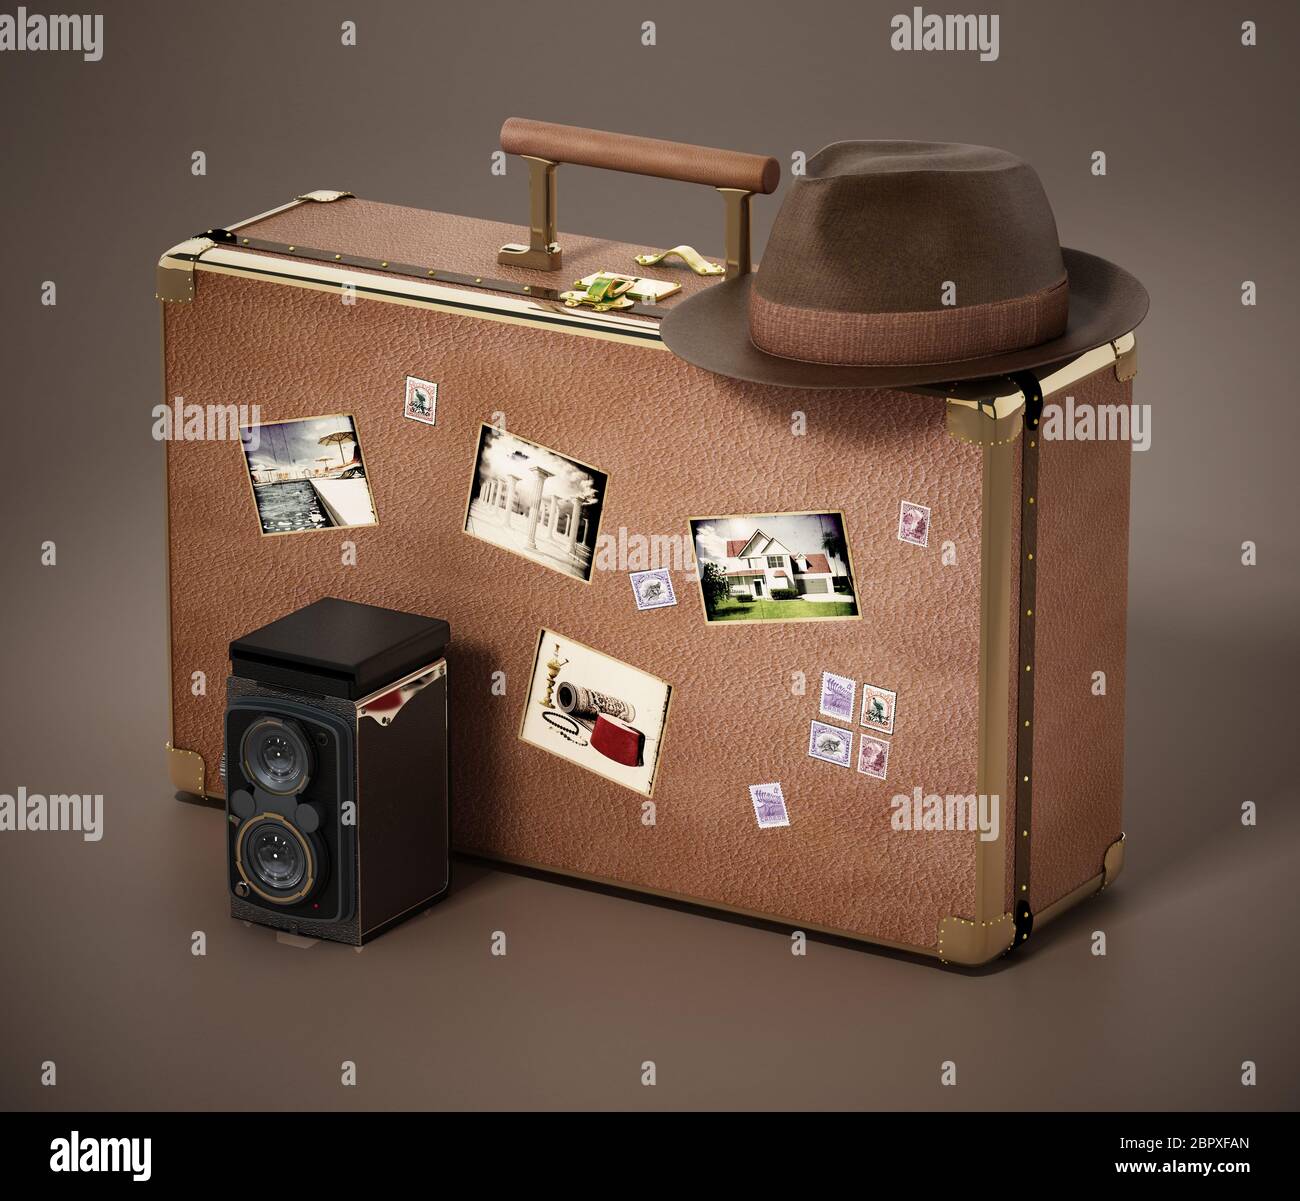 Appareil photo vintage et chapeau sur une valise avec de vieilles photos. Les images sur les photos sont de mon propre portefeuille. Illustration 3D. Banque D'Images